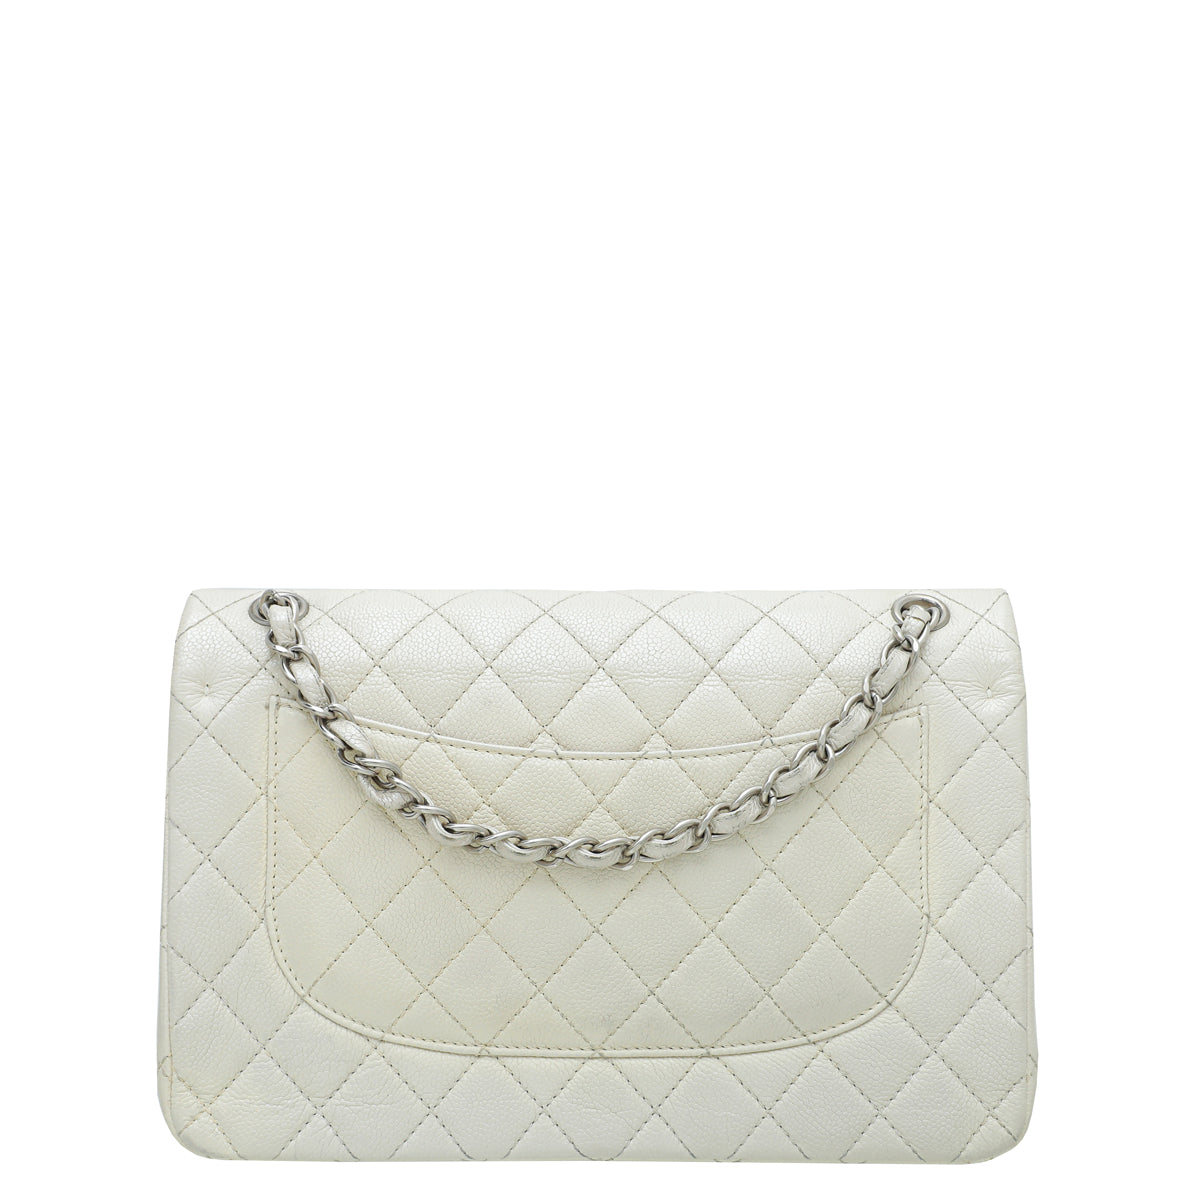 Chanel Metallic White CC Classic Double Flap Jumbo Bag